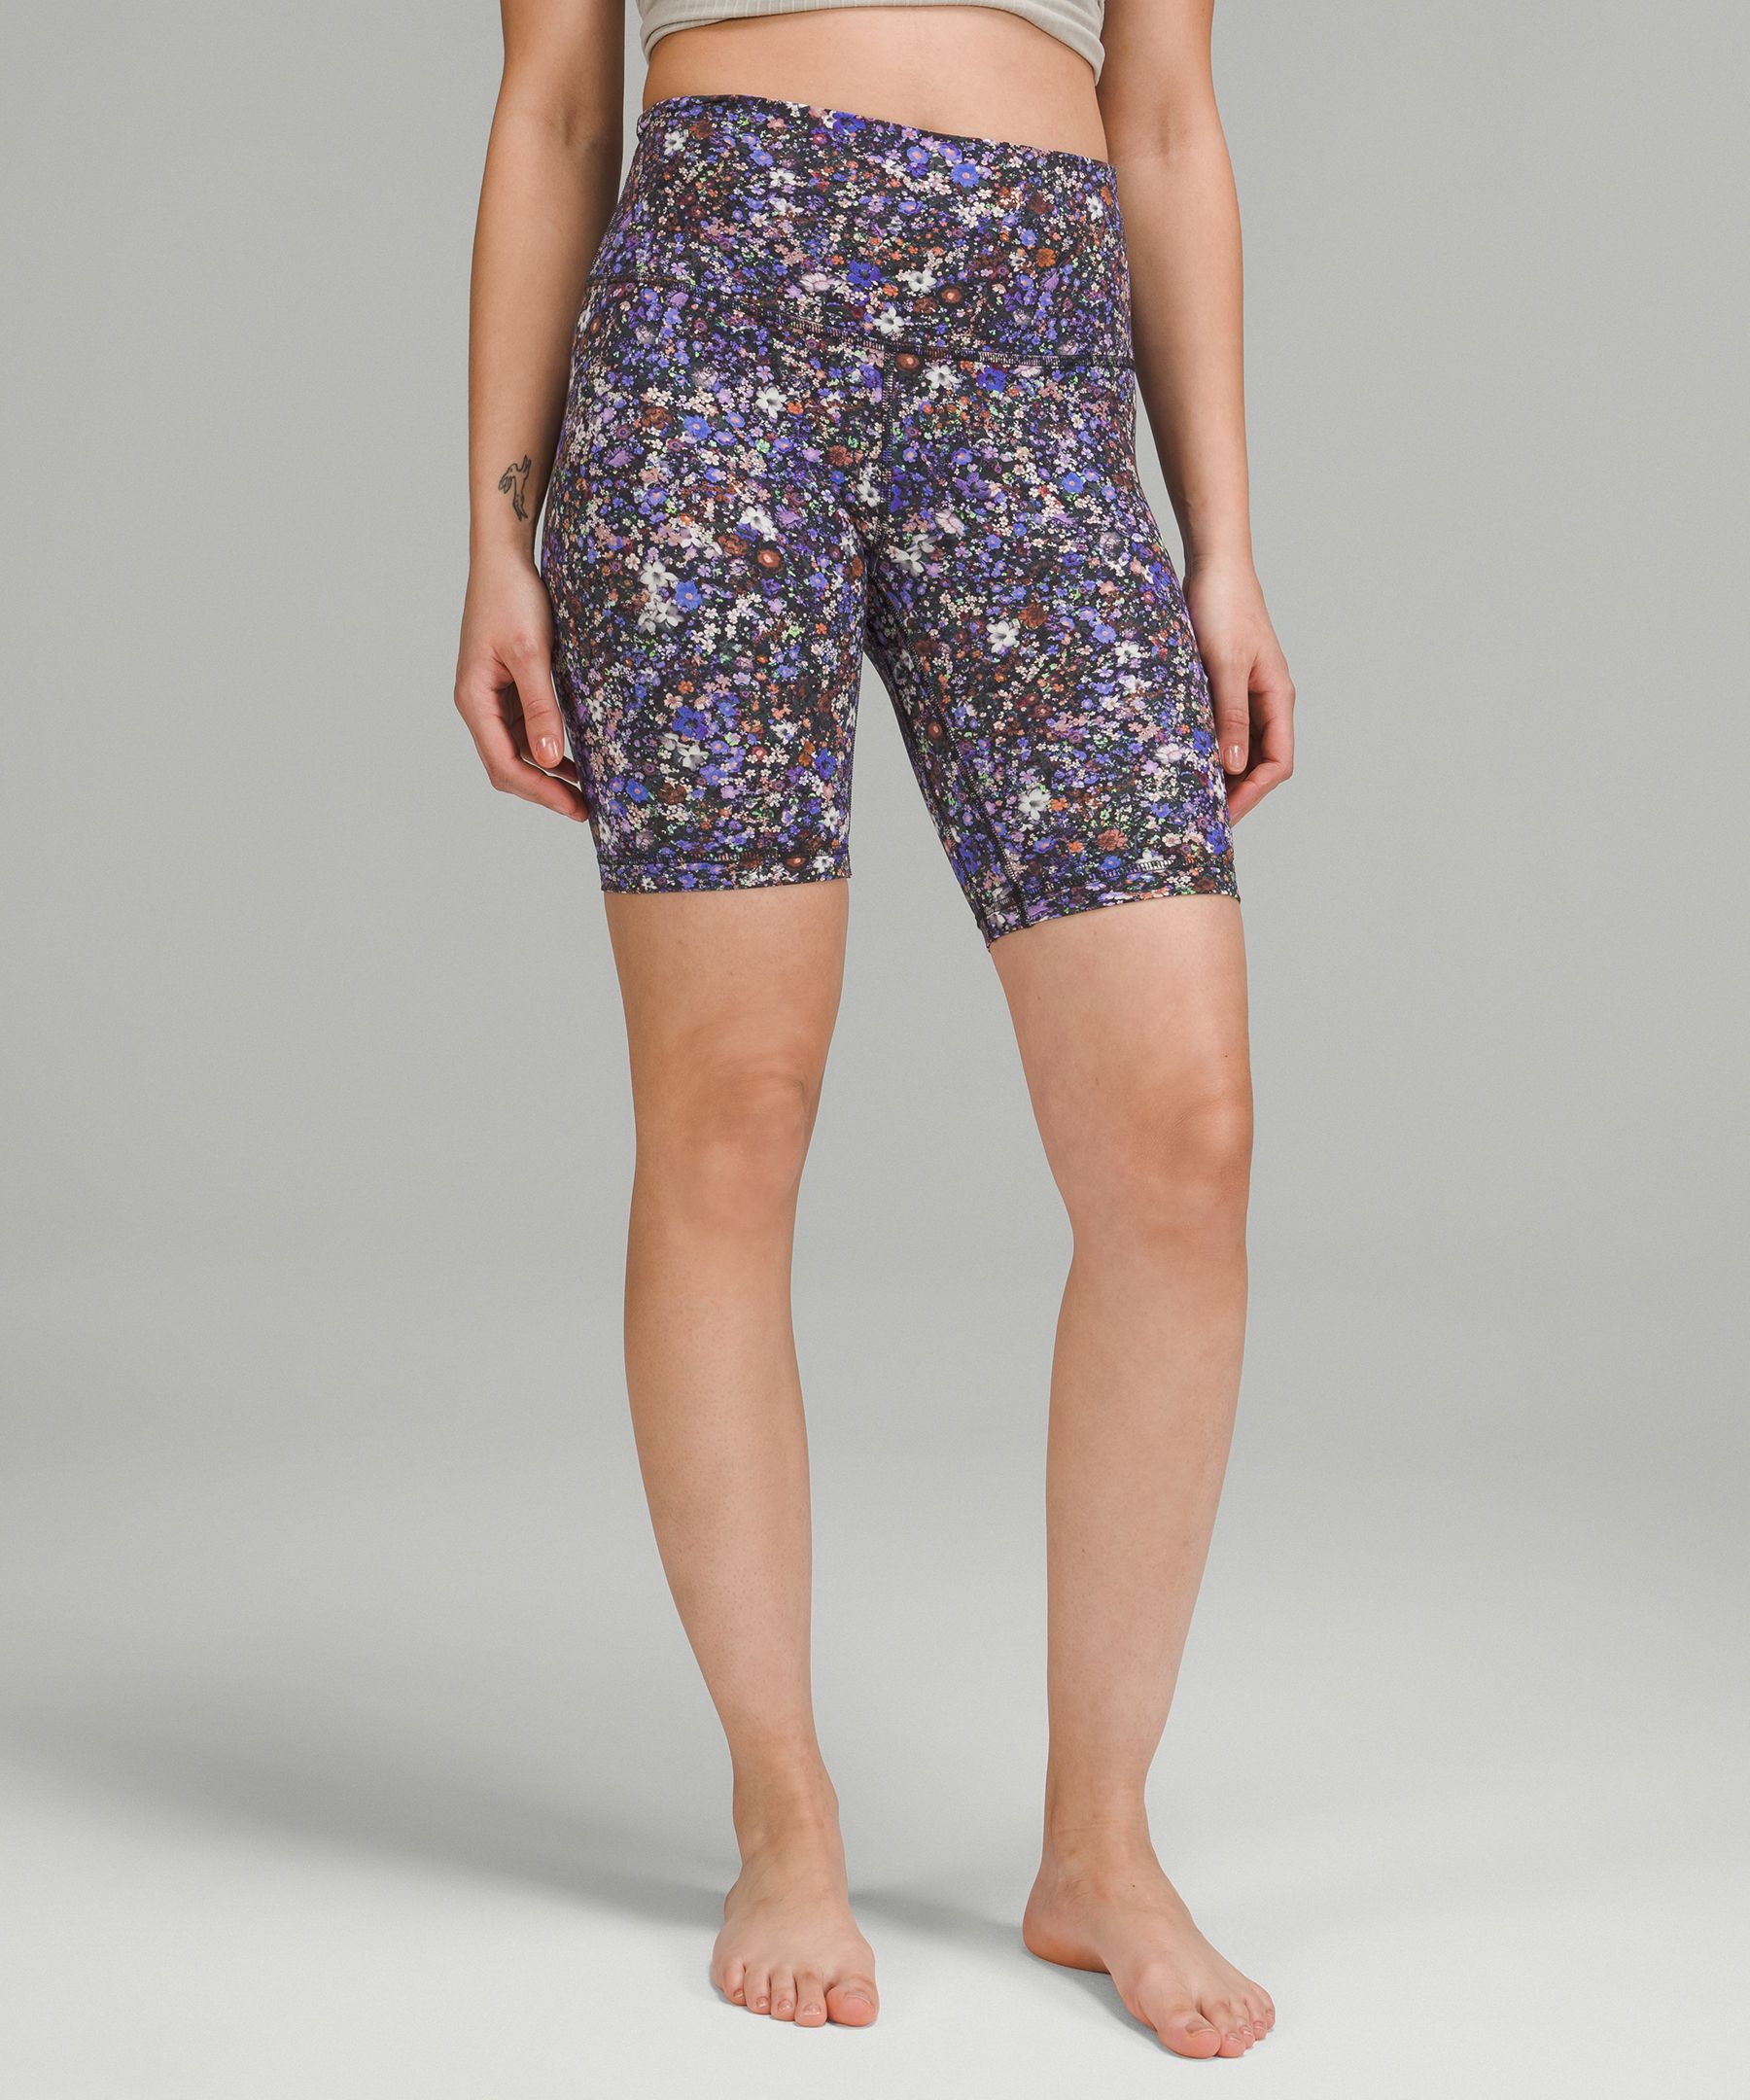 Lululemon Align™ High-rise Shorts 8" In Flower Burst